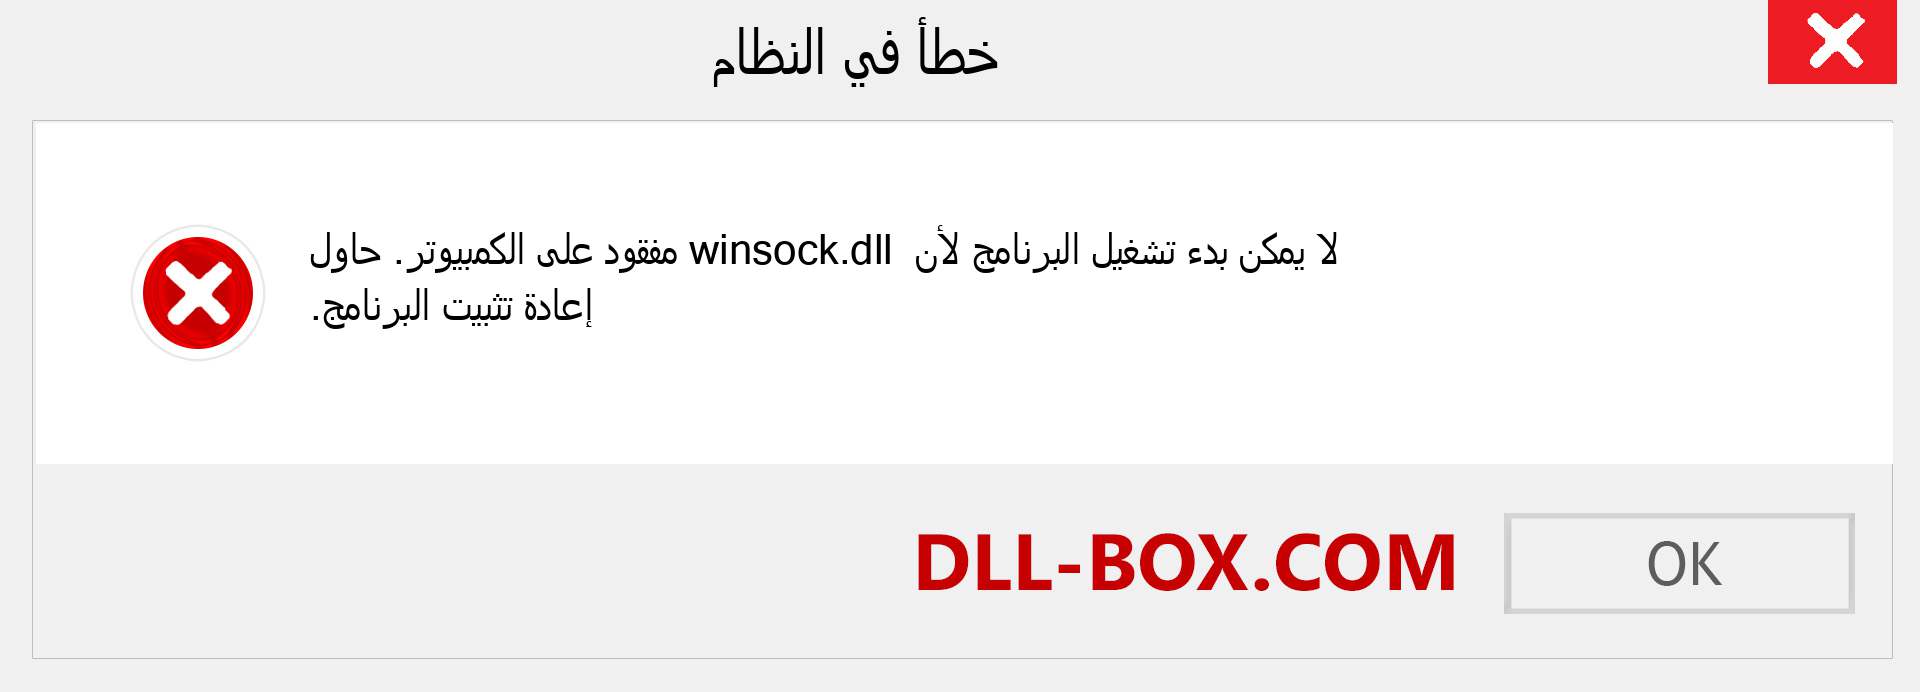 ملف winsock.dll مفقود ؟. التنزيل لنظام التشغيل Windows 7 و 8 و 10 - إصلاح خطأ winsock dll المفقود على Windows والصور والصور